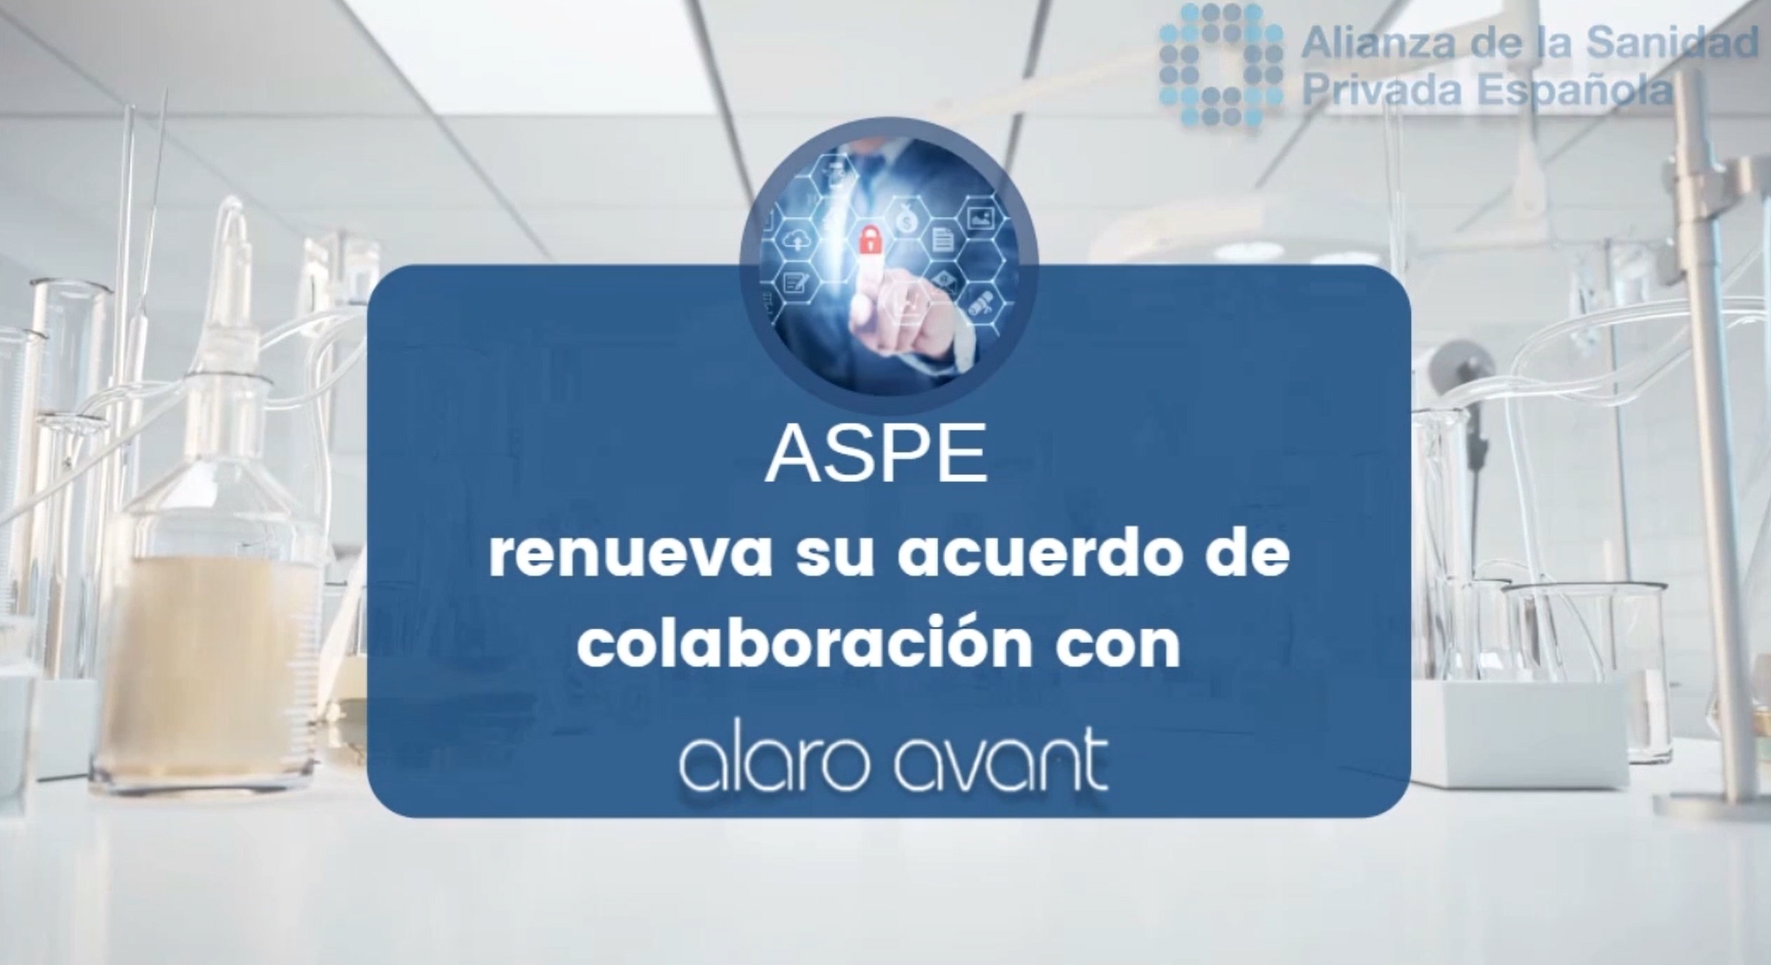 ASPE amplía su acuerdo de colaboración con Alaro Avant para reforzar el cumplimiento de Protección de Datos y Ciberseguridad en la sanidad privada